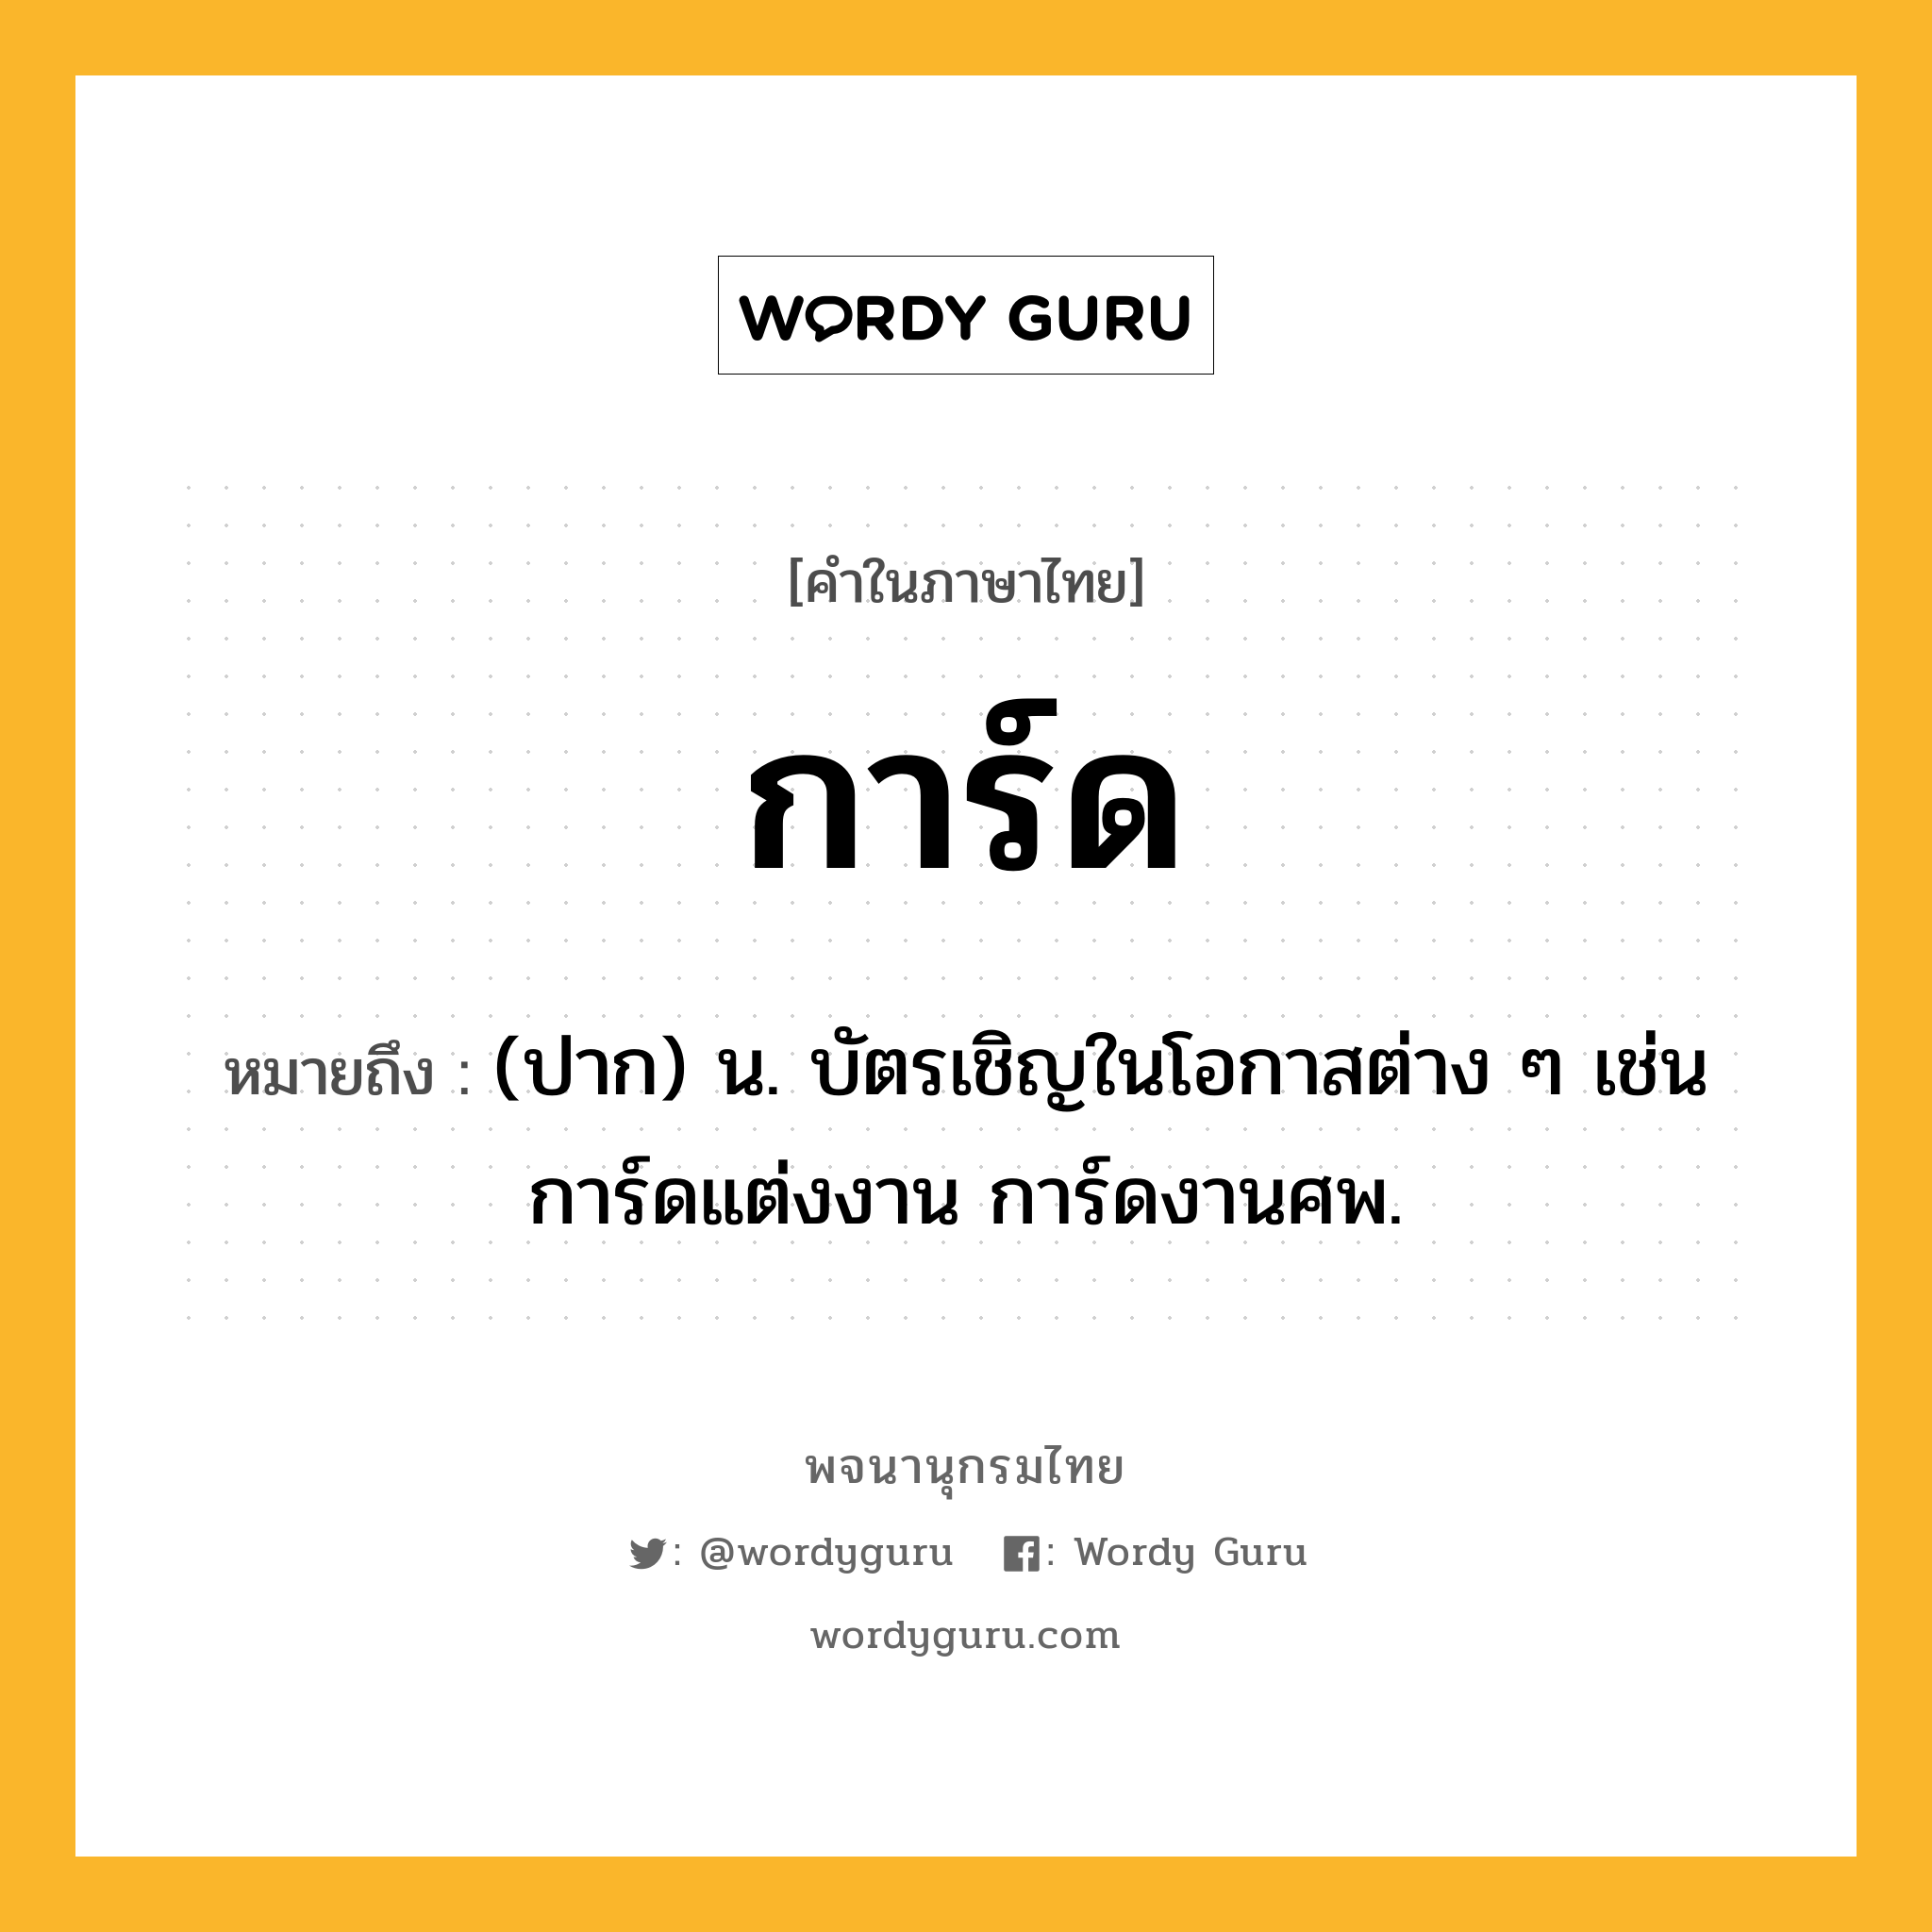 การ์ด หมายถึงอะไร?, คำในภาษาไทย การ์ด หมายถึง (ปาก) น. บัตรเชิญในโอกาสต่าง ๆ เช่น การ์ดแต่งงาน การ์ดงานศพ.